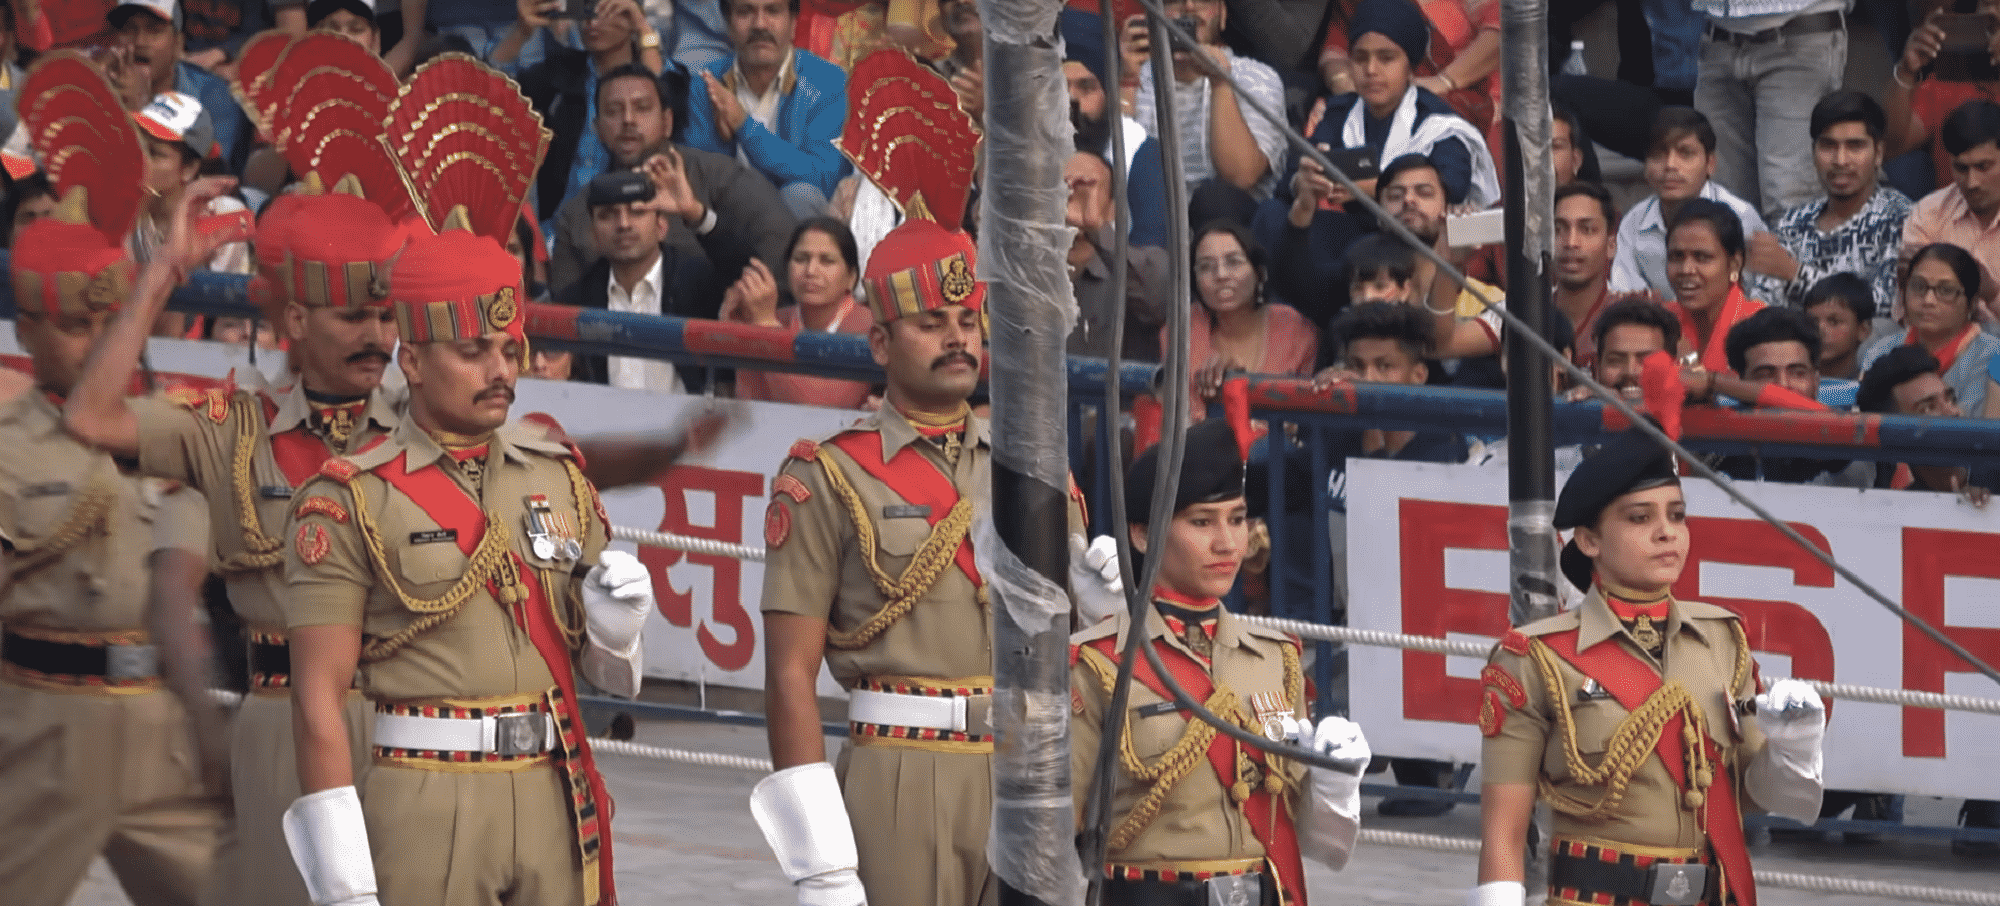 Ο πολεμικός χορός τελετουργία στα σύνορα Ινδίας με Πακιστάν